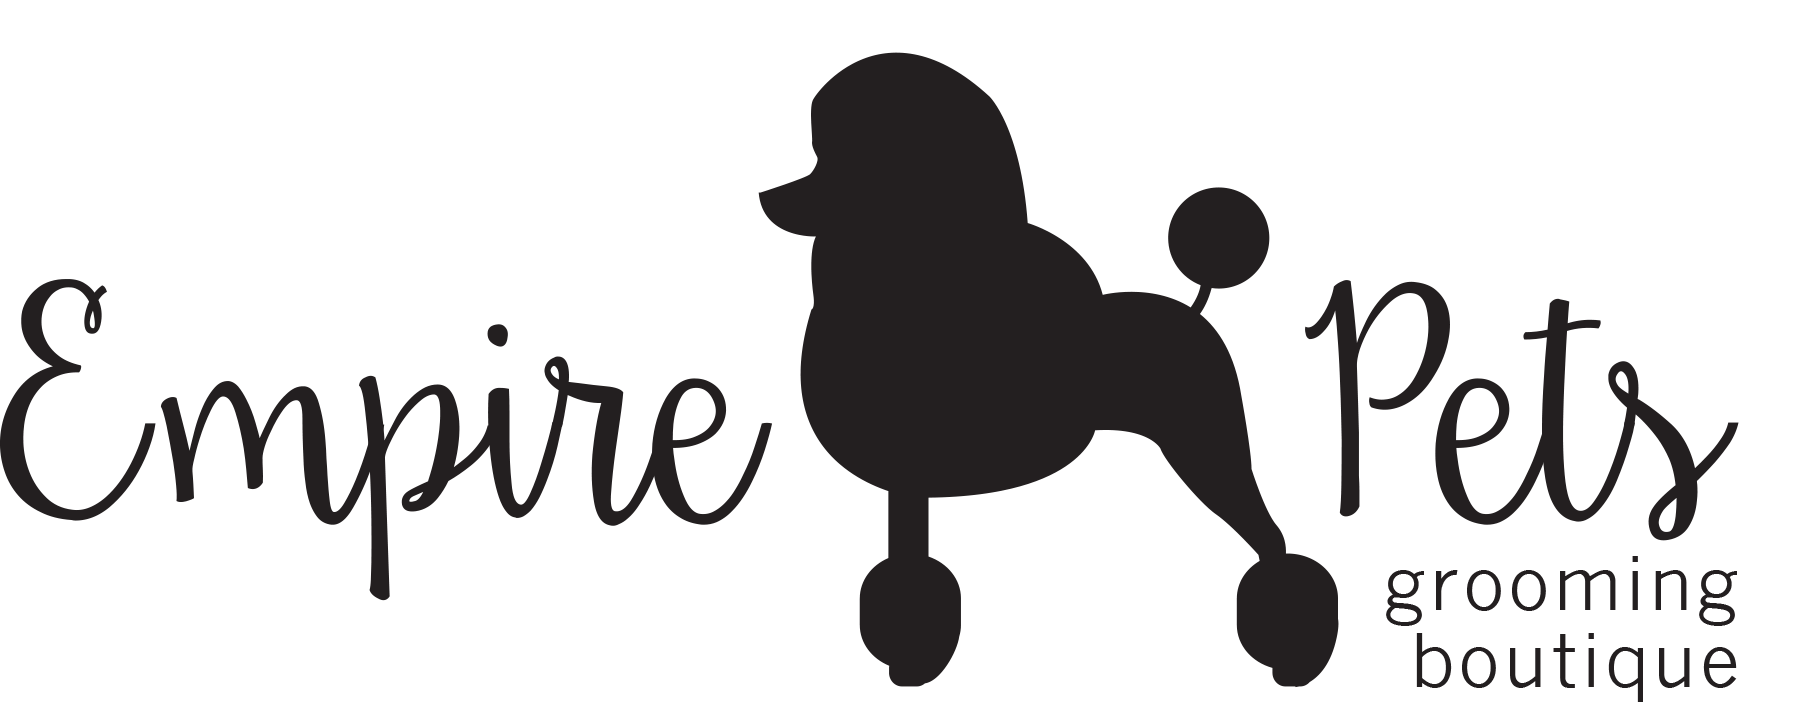 Empire Pets Salon & Boutique - Logo